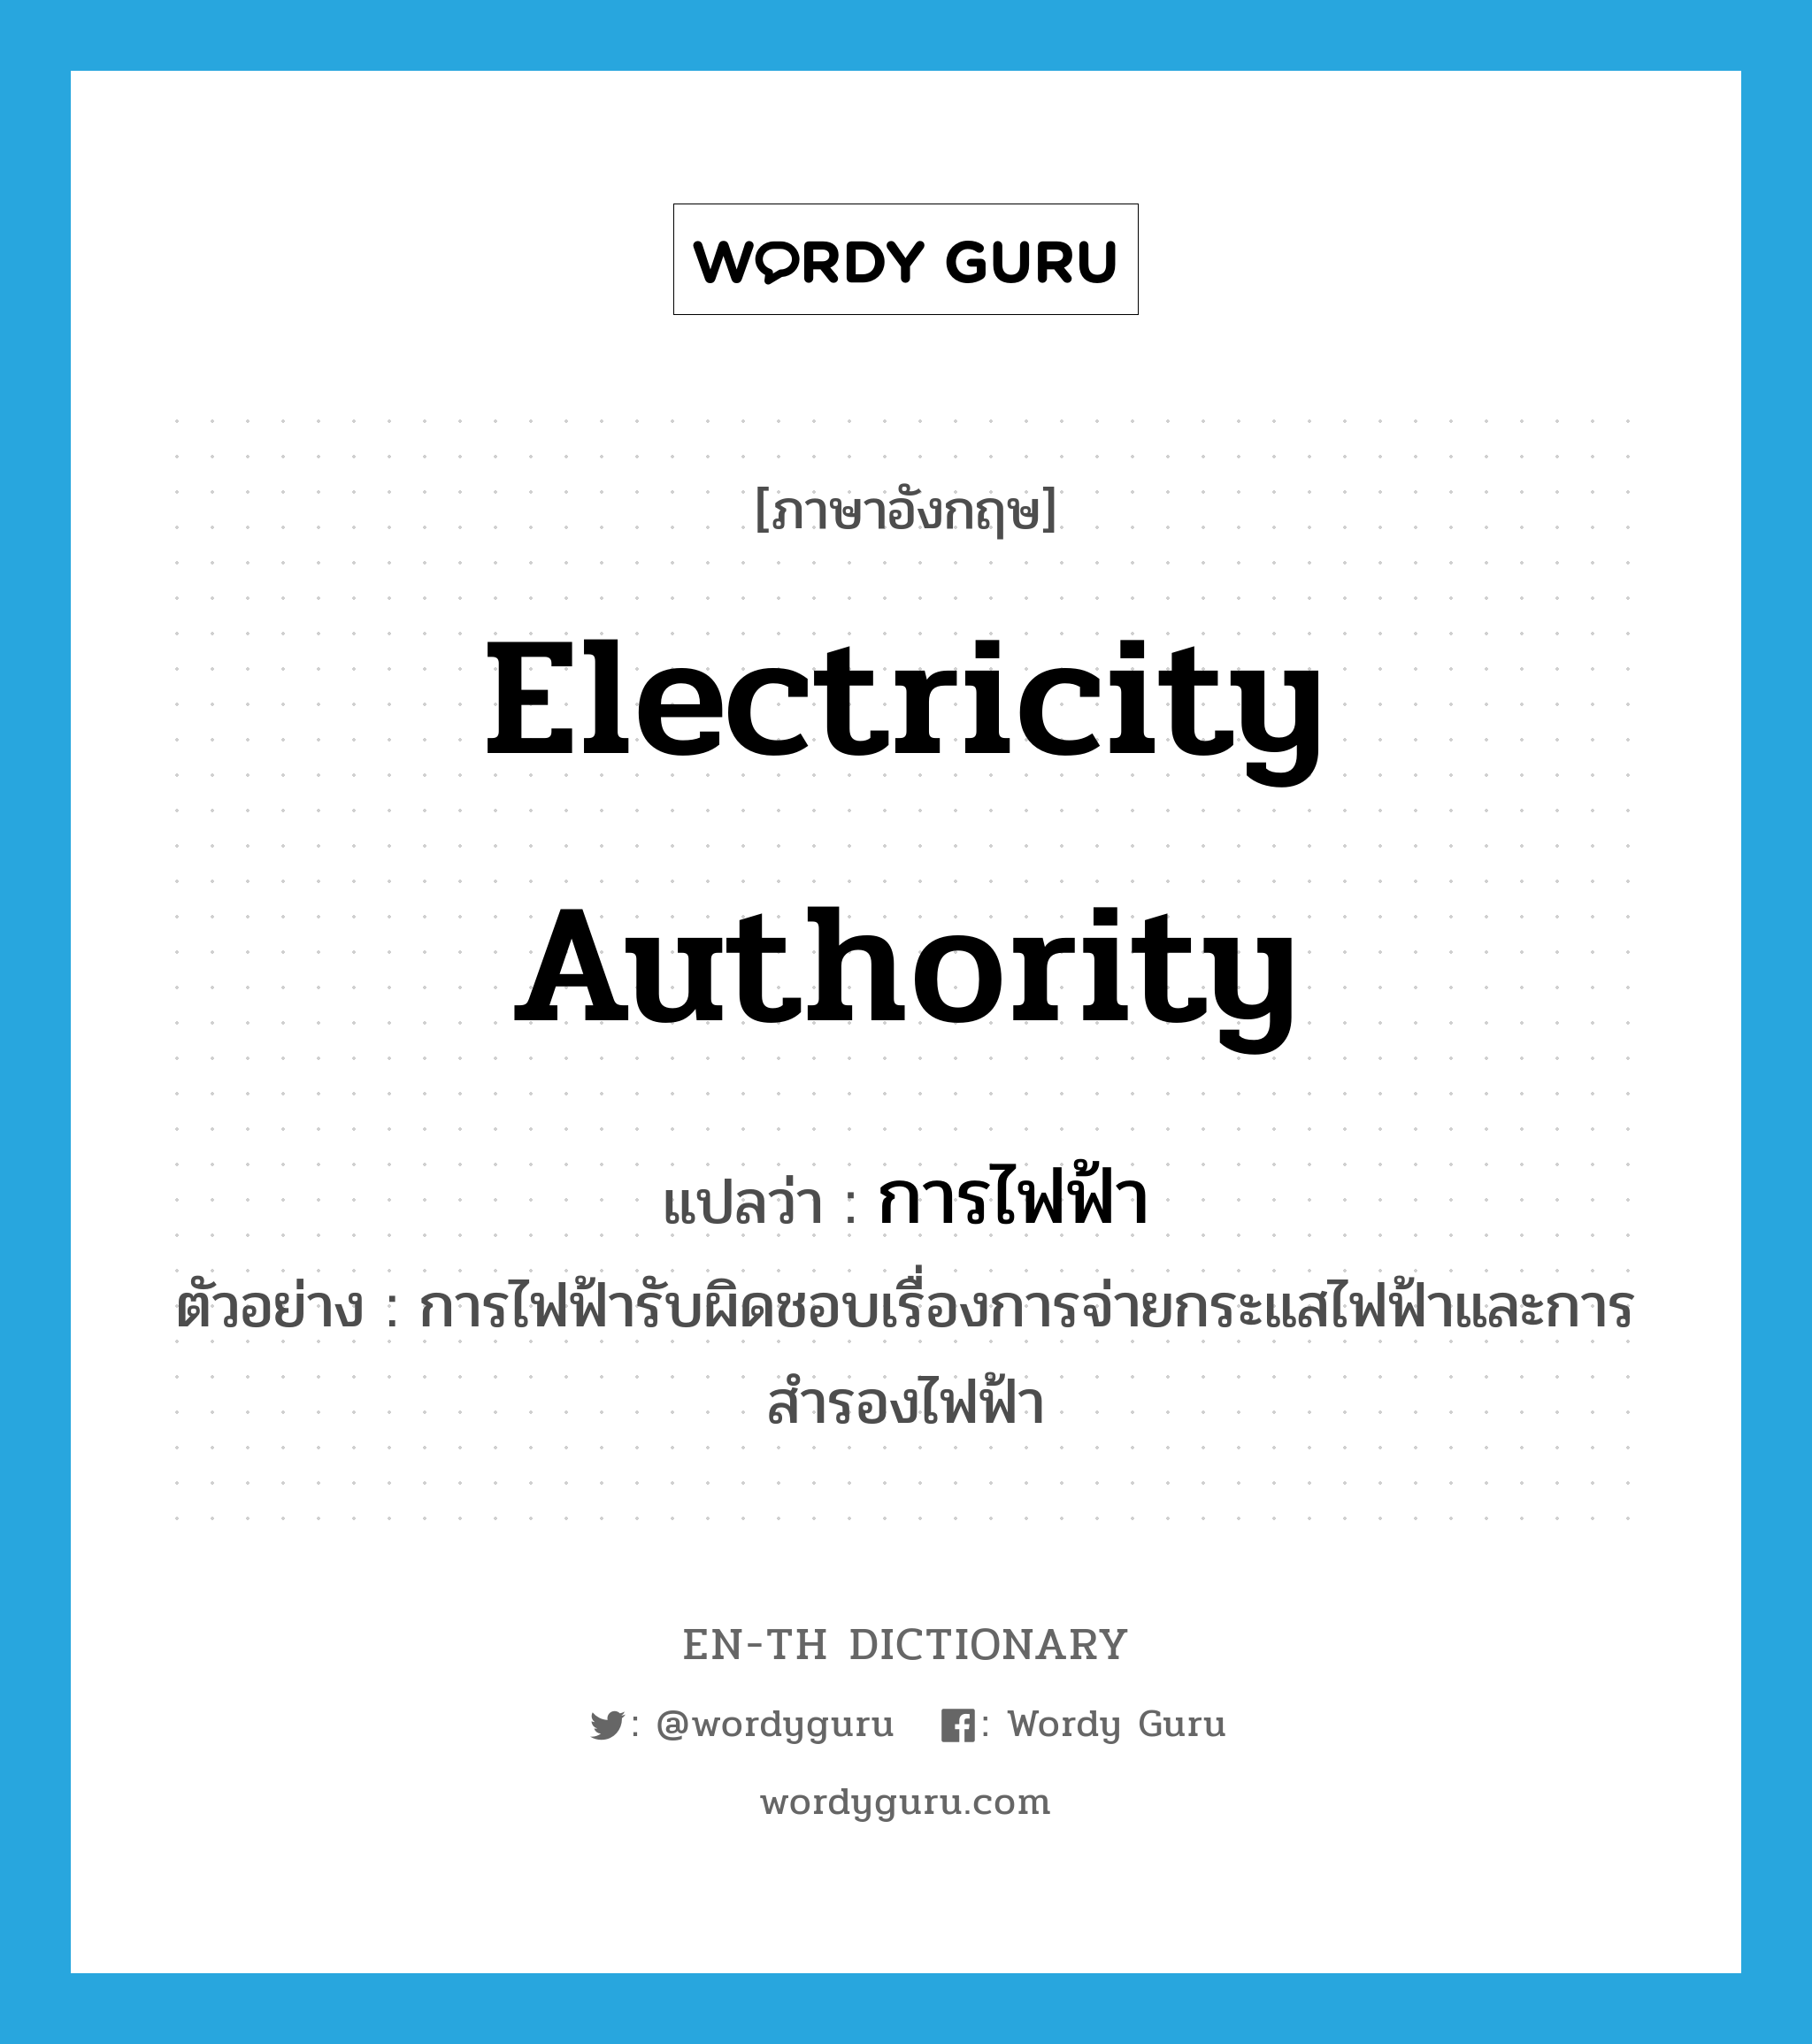 การไฟฟ้า ภาษาอังกฤษ?, คำศัพท์ภาษาอังกฤษ การไฟฟ้า แปลว่า electricity authority ประเภท N ตัวอย่าง การไฟฟ้ารับผิดชอบเรื่องการจ่ายกระแสไฟฟ้าและการสำรองไฟฟ้า หมวด N